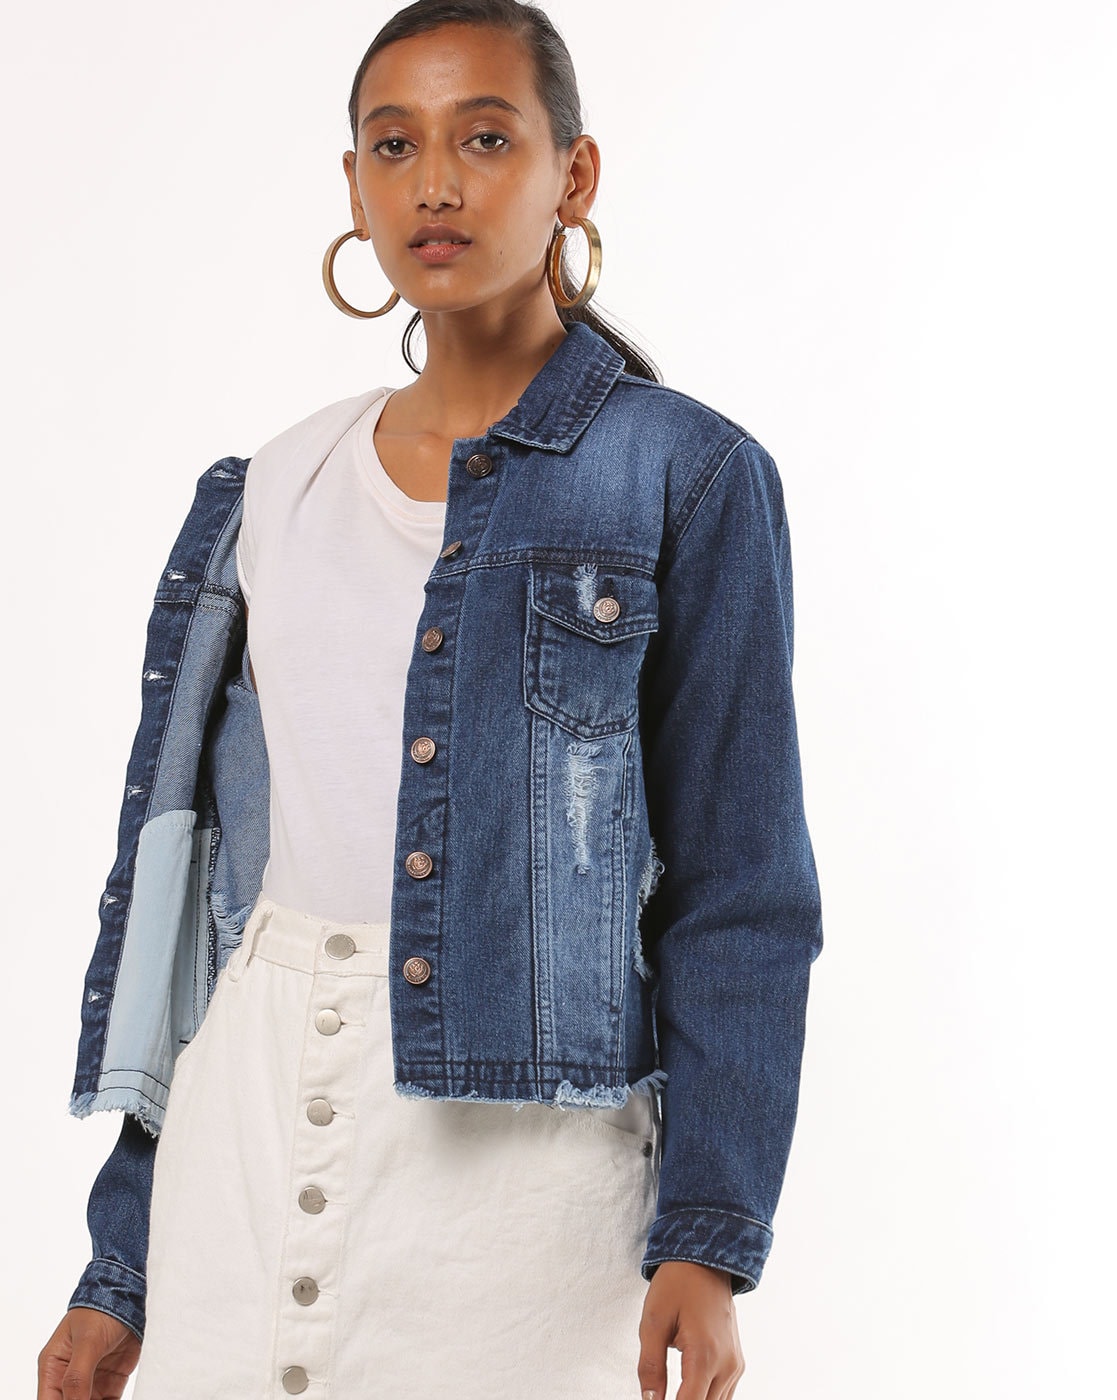 discount 69% Navy Blue S Easy Wear jacket WOMEN FASHION Jackets Jacket Jean 